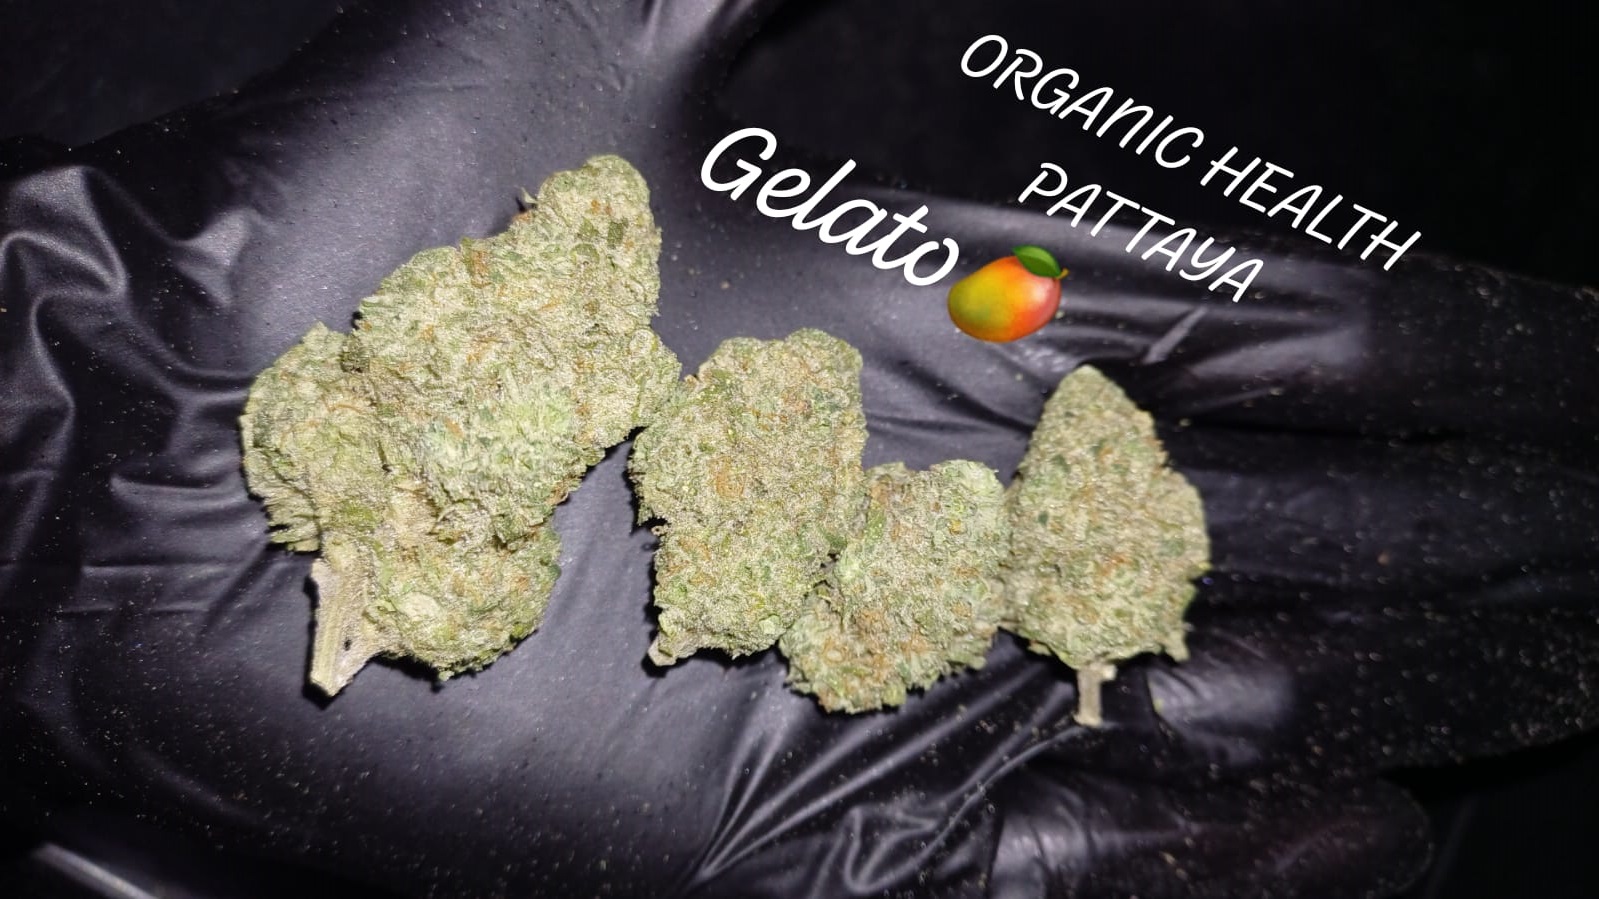 Gelato cannabis strains